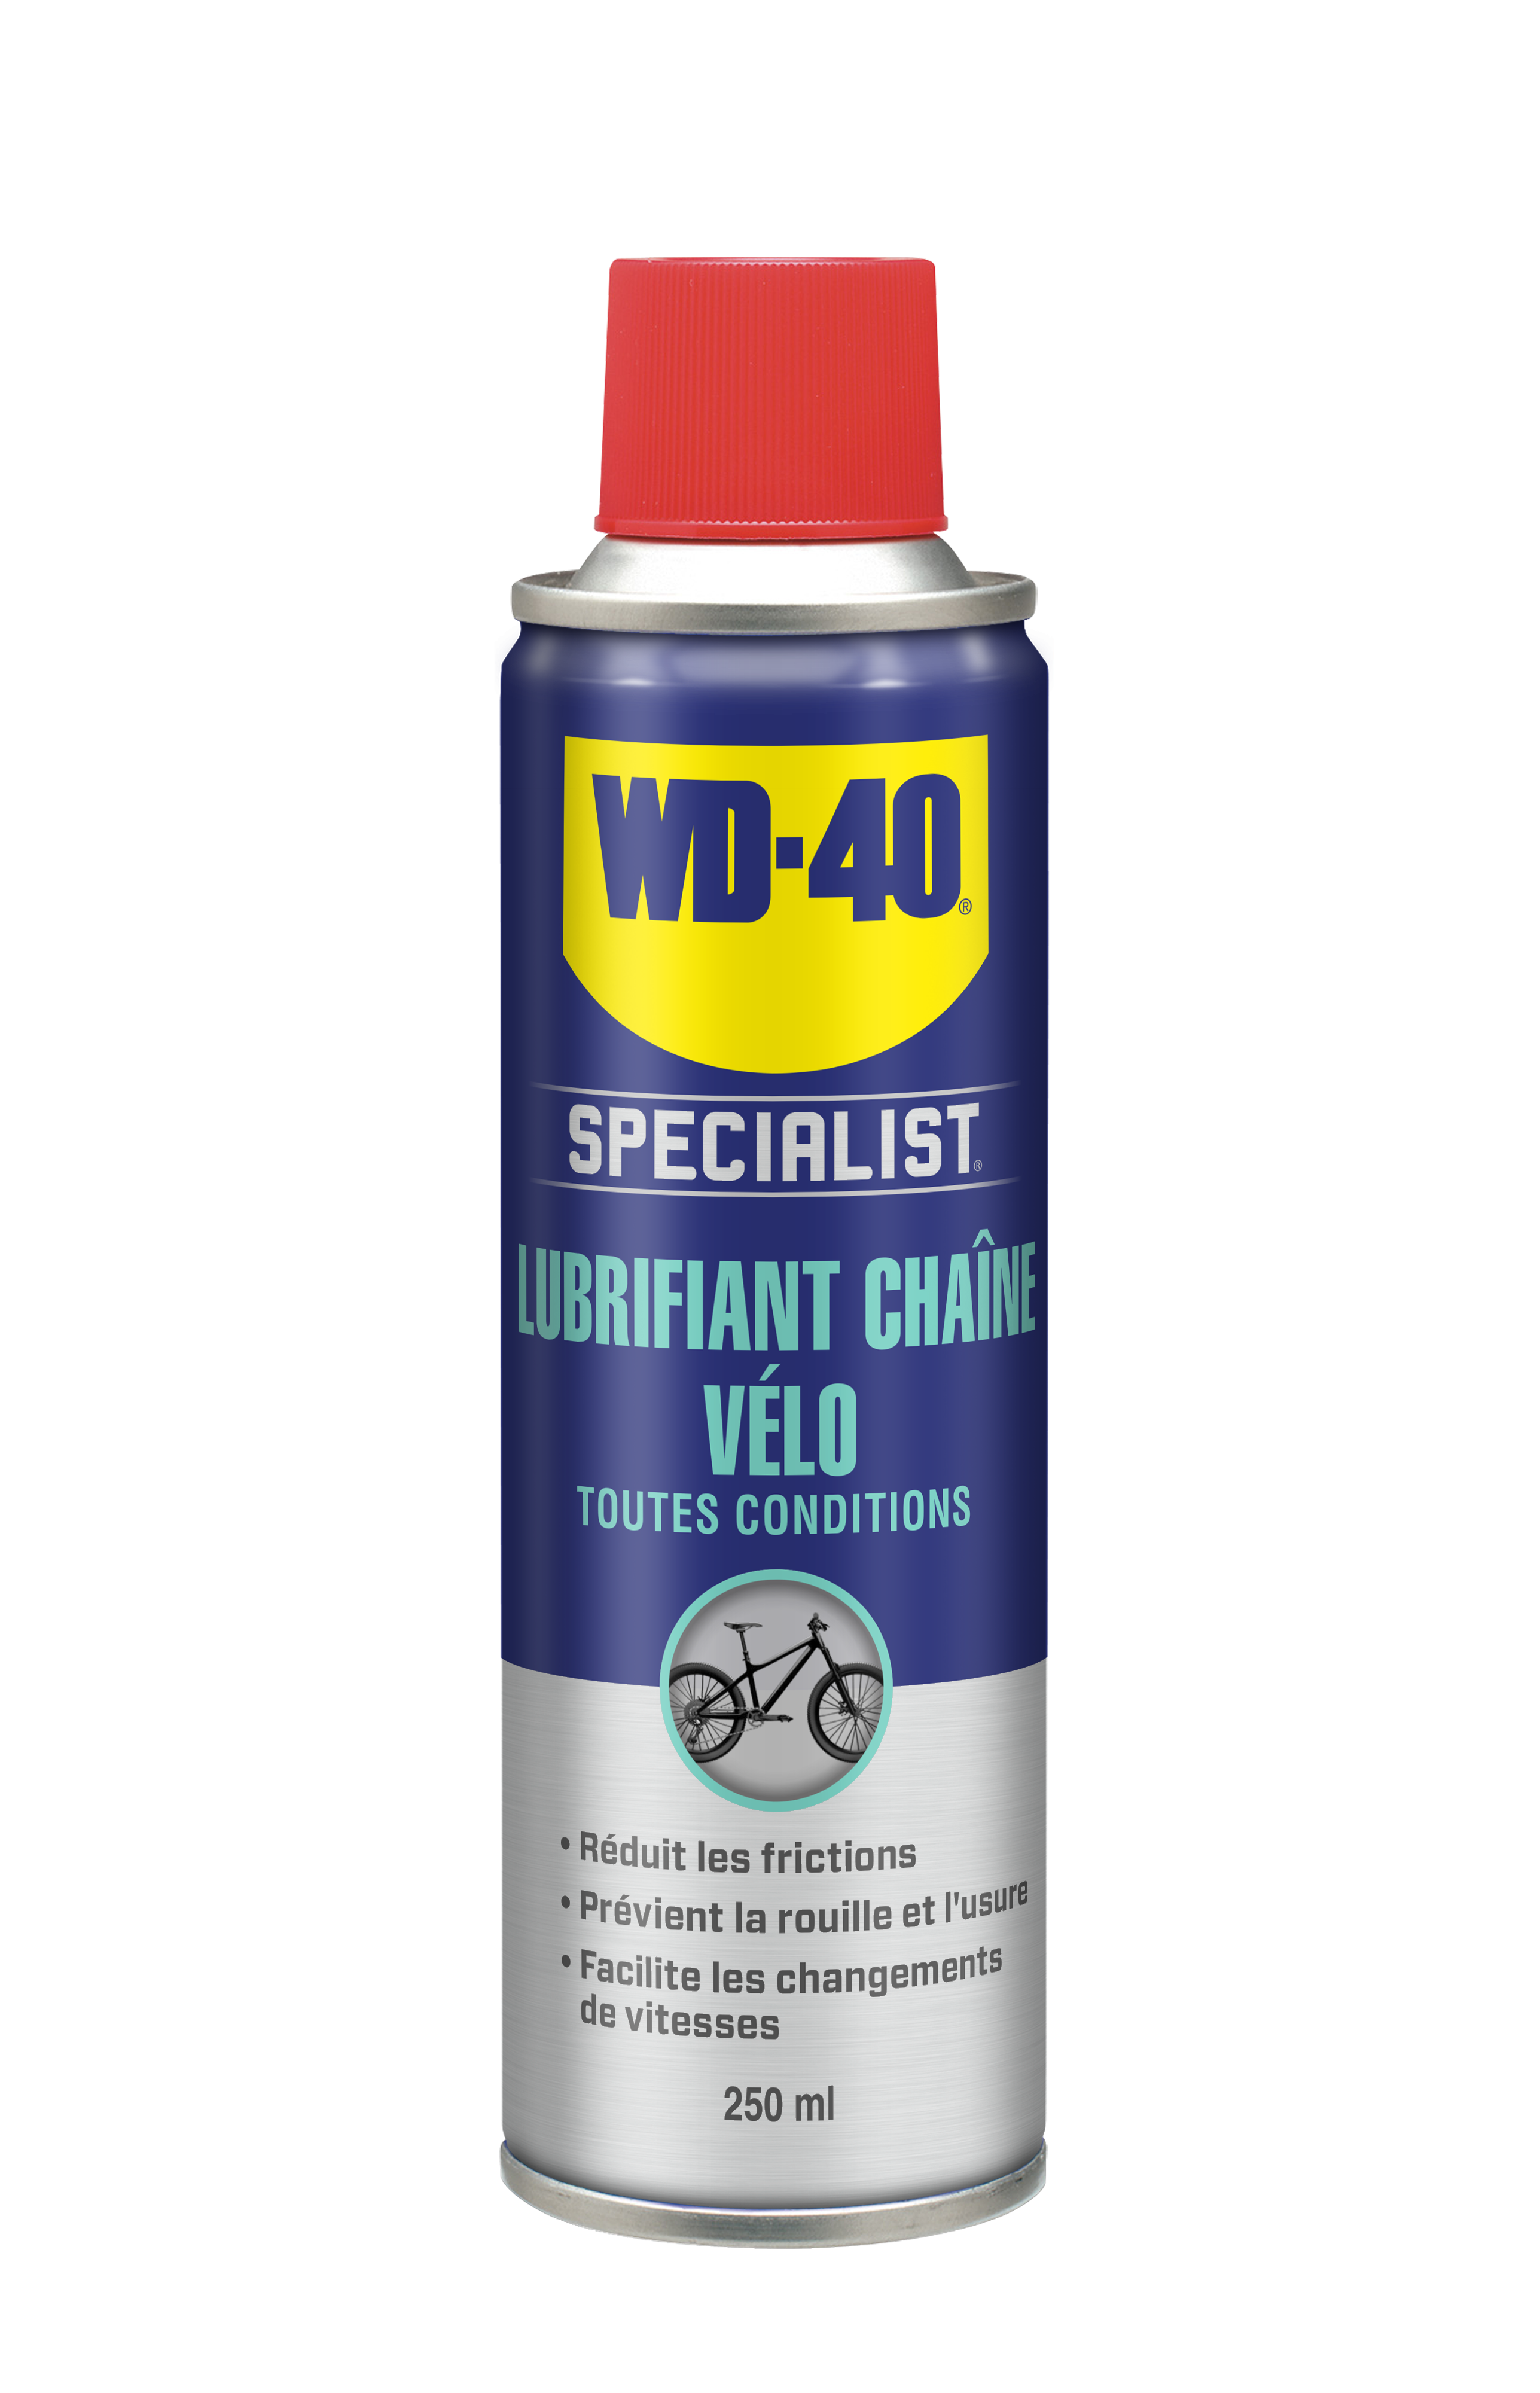  Lubrifiant chaîne vélo toutes conditions - WD-40